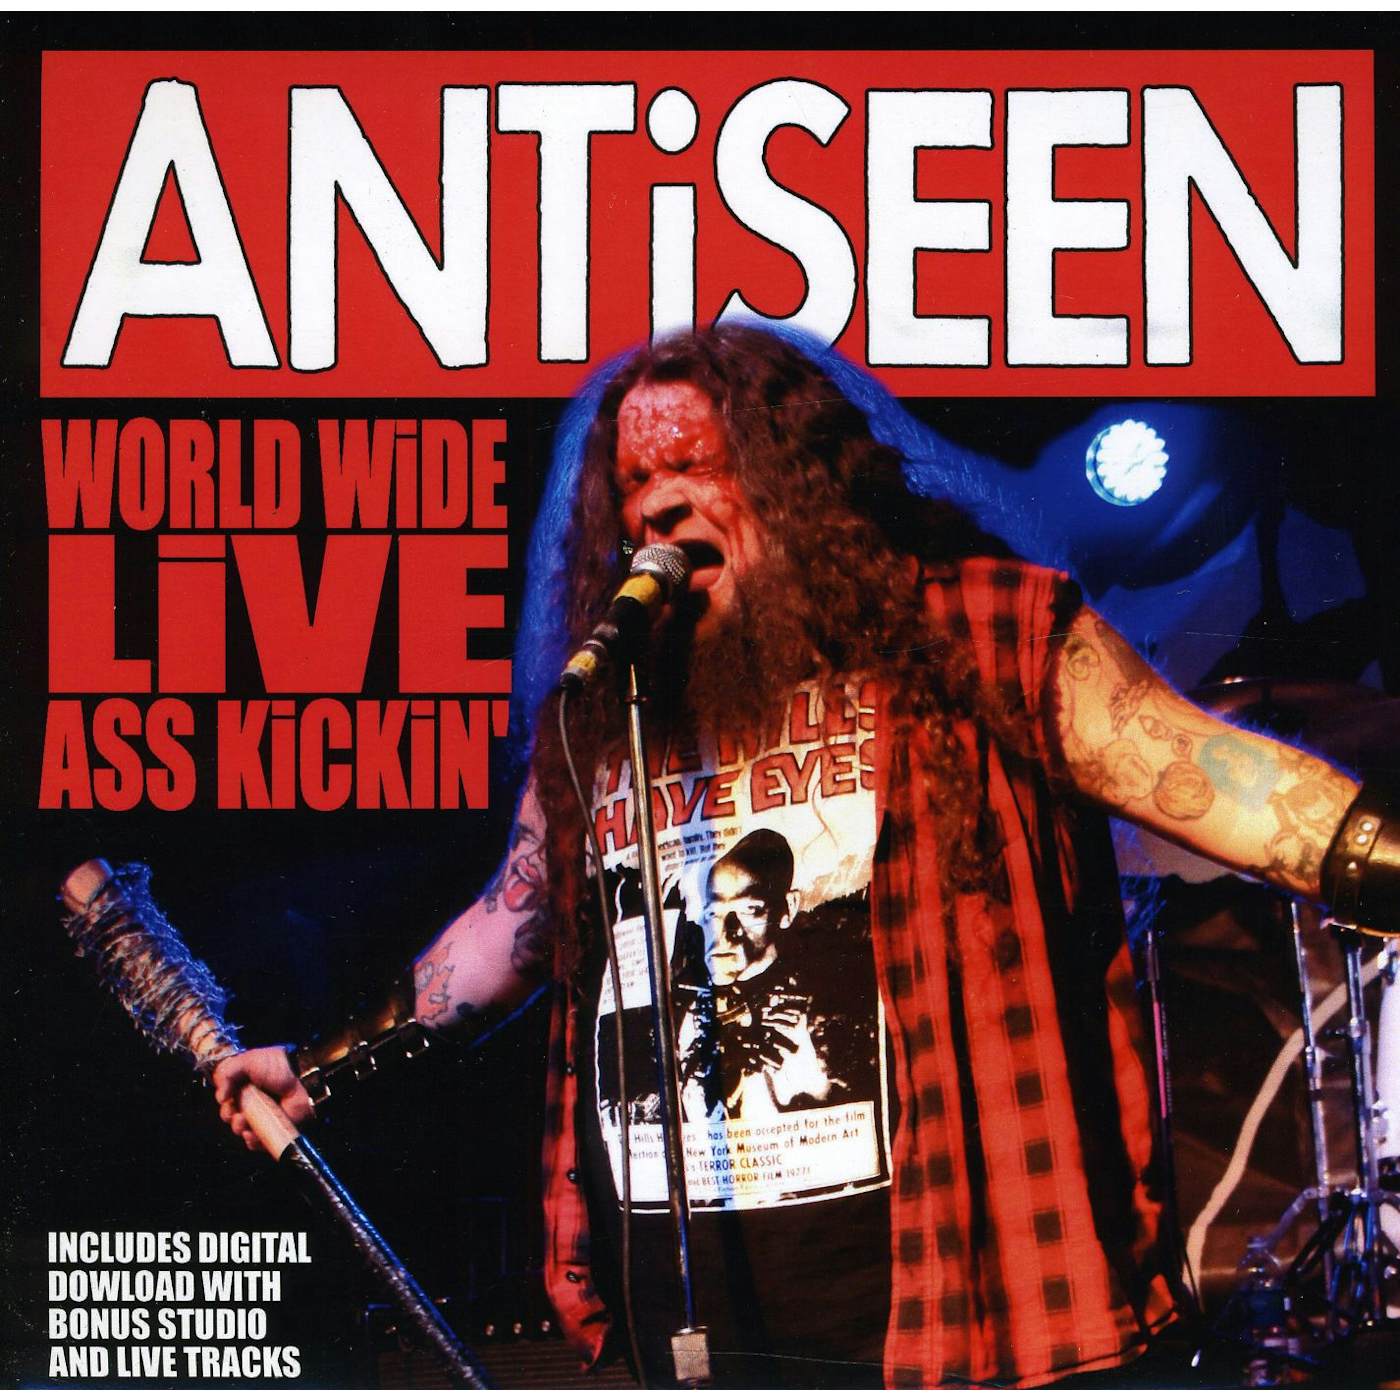 Antiseen WORLDWIDE LIVE ASS KICKIN Vinyl Record